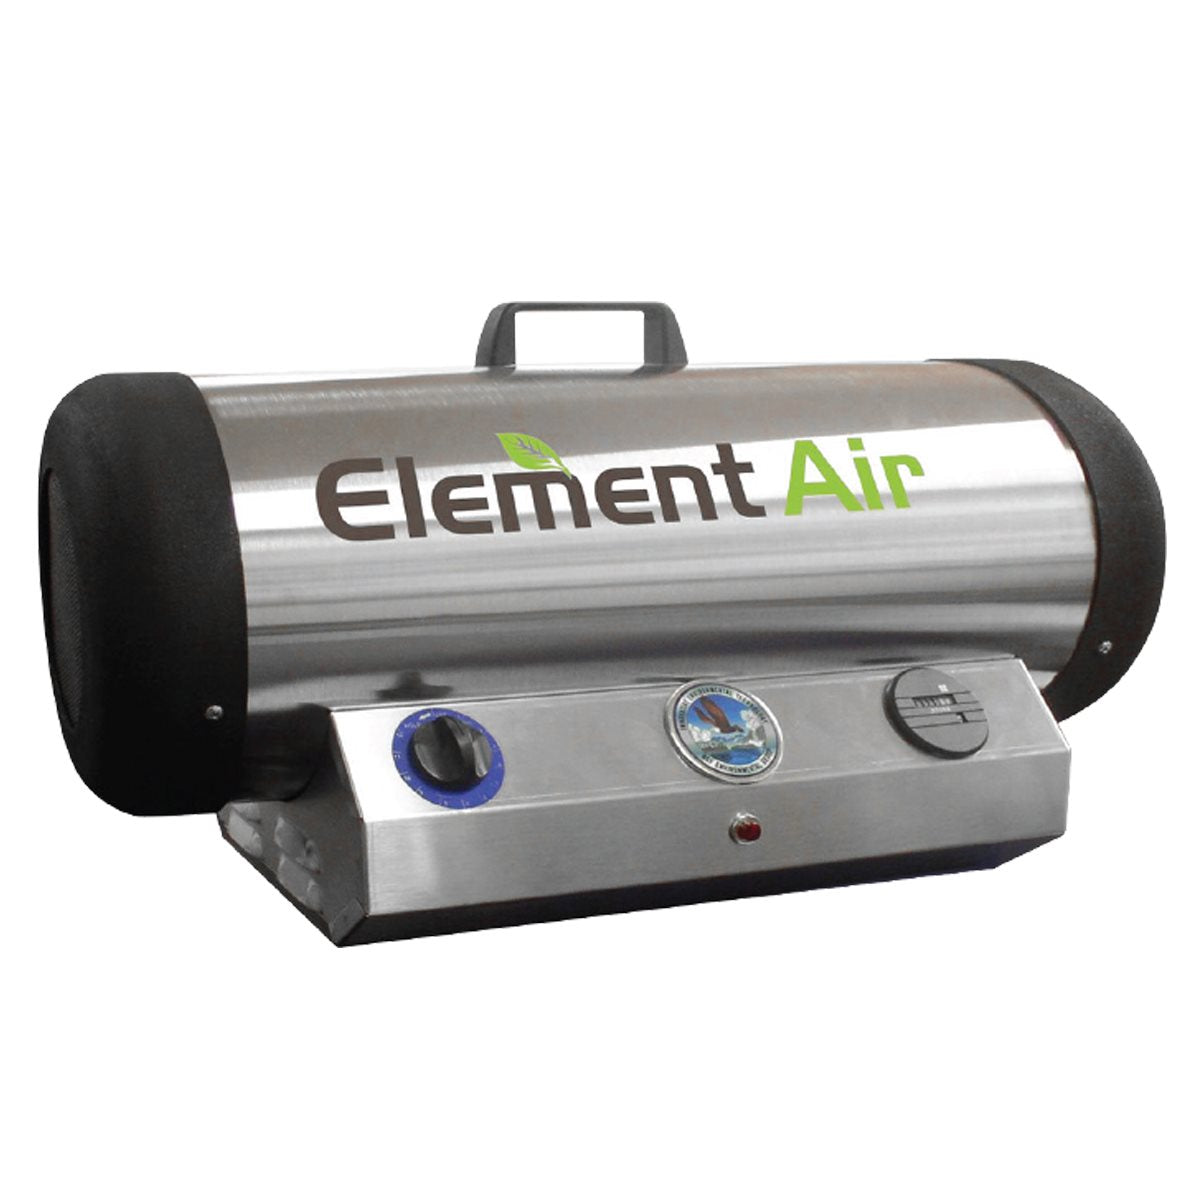 Element Air Turbozone